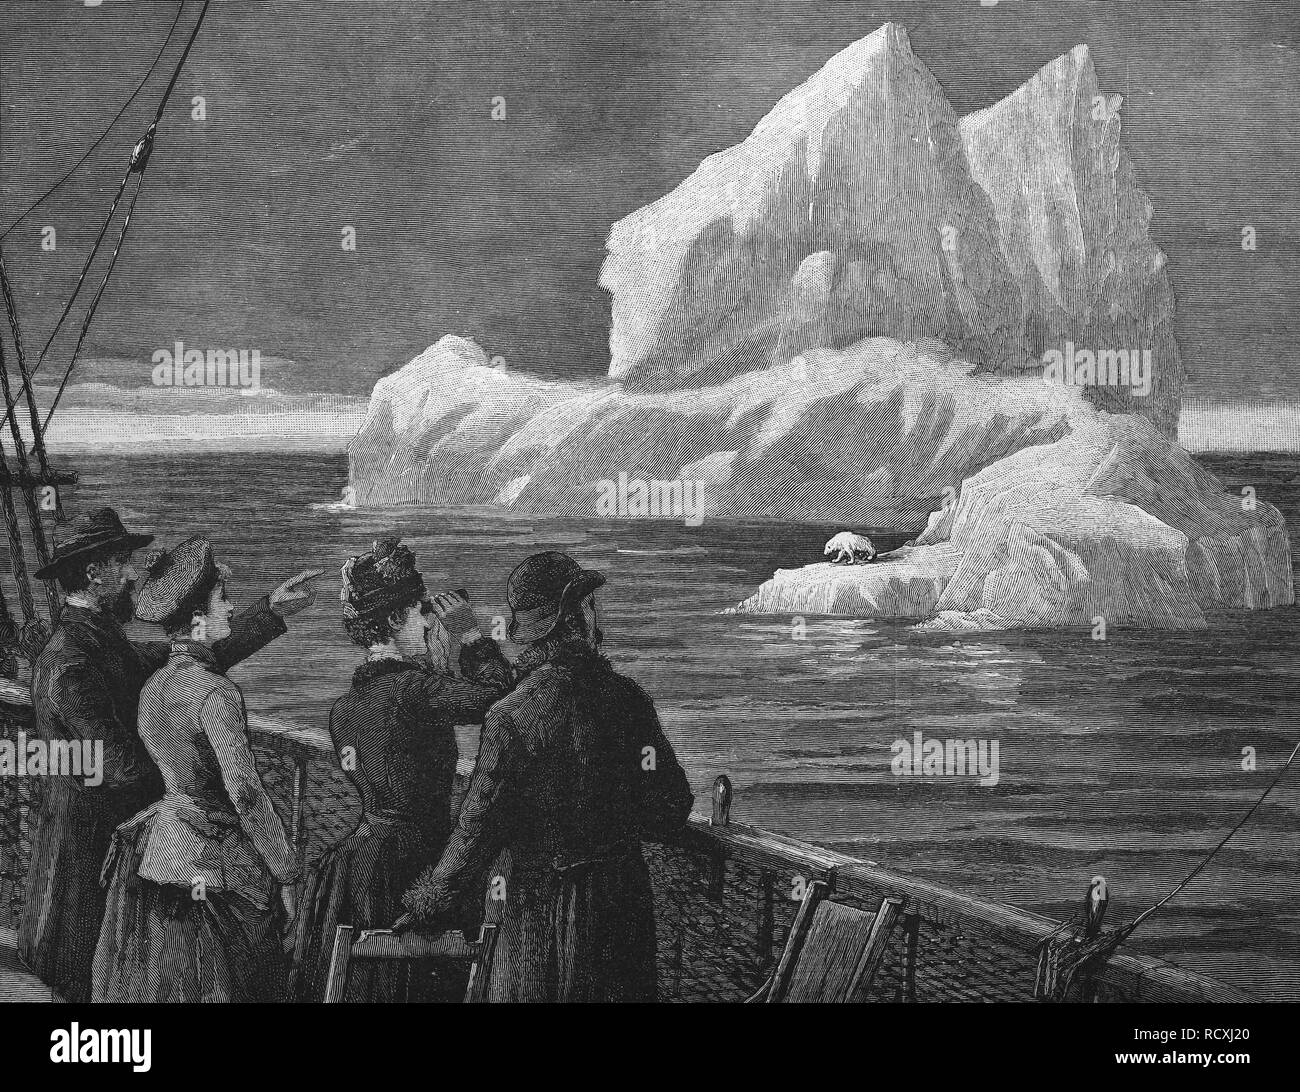 Incisione storica, iceberg nell'Oceano Atlantico, 1888 Foto Stock